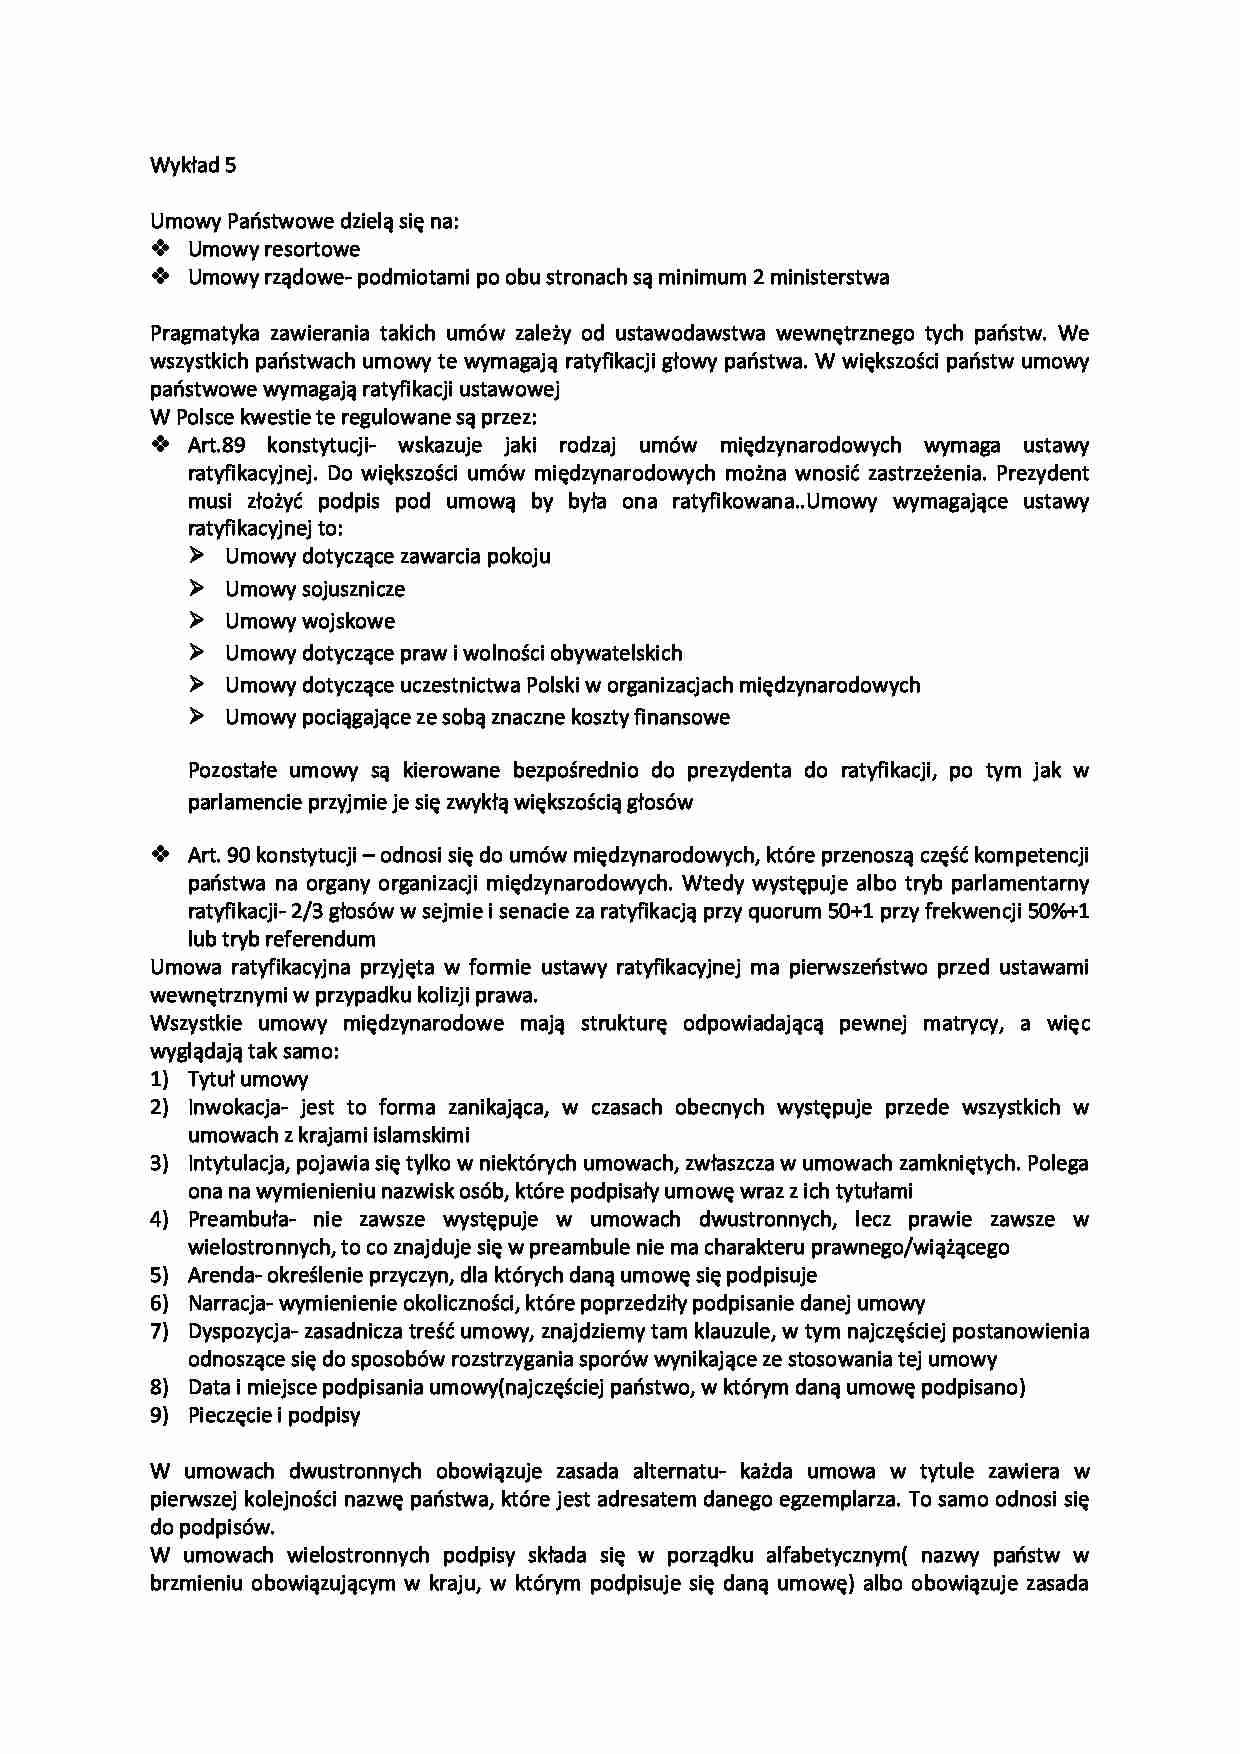 Umowy Państwowe - charakterystyka - strona 1